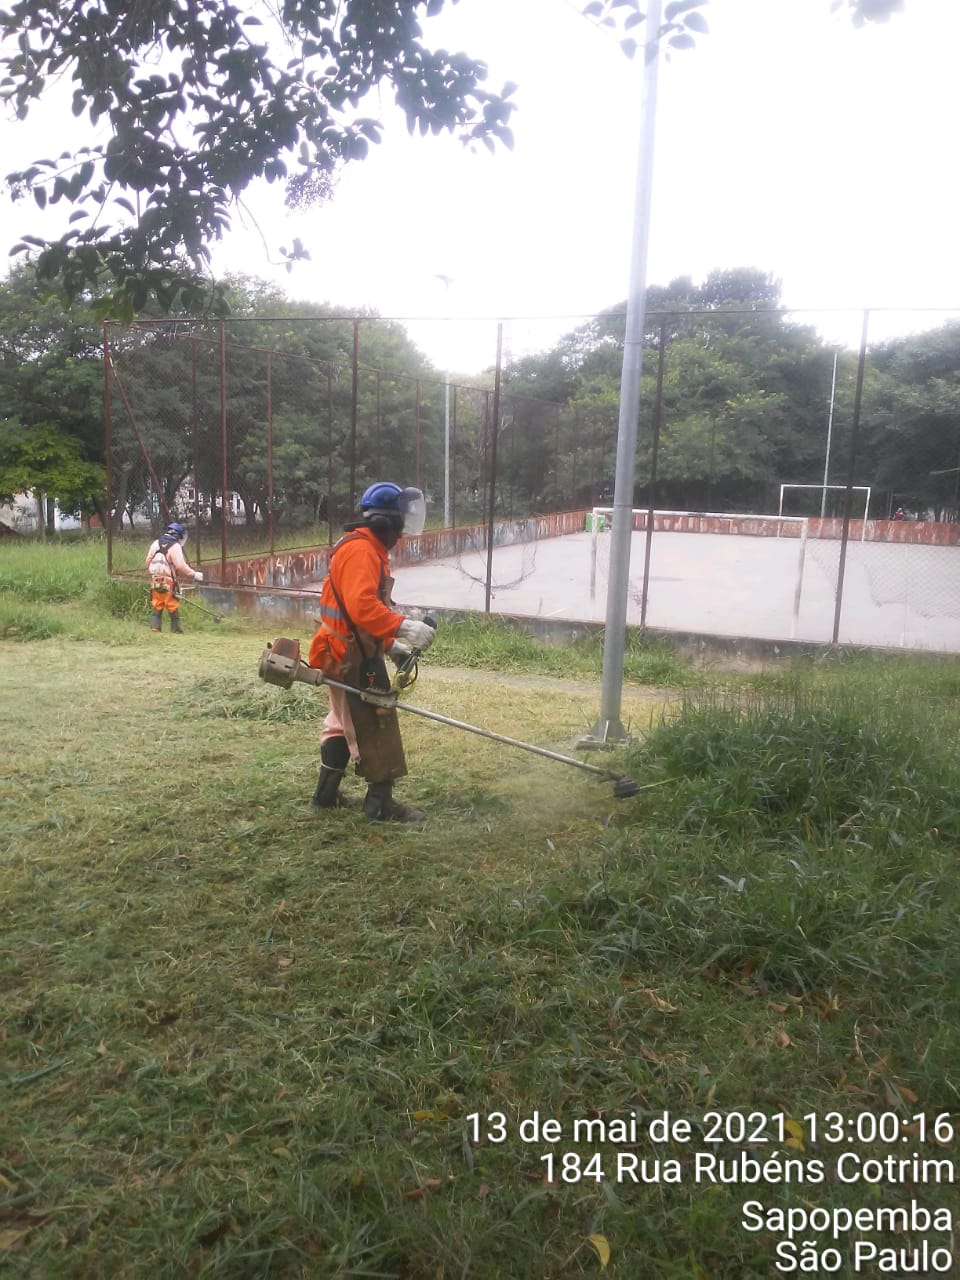 Trabalhador com uniforme laranja, roça grama ao lado de uma quadra de esportes, em uma praça. 